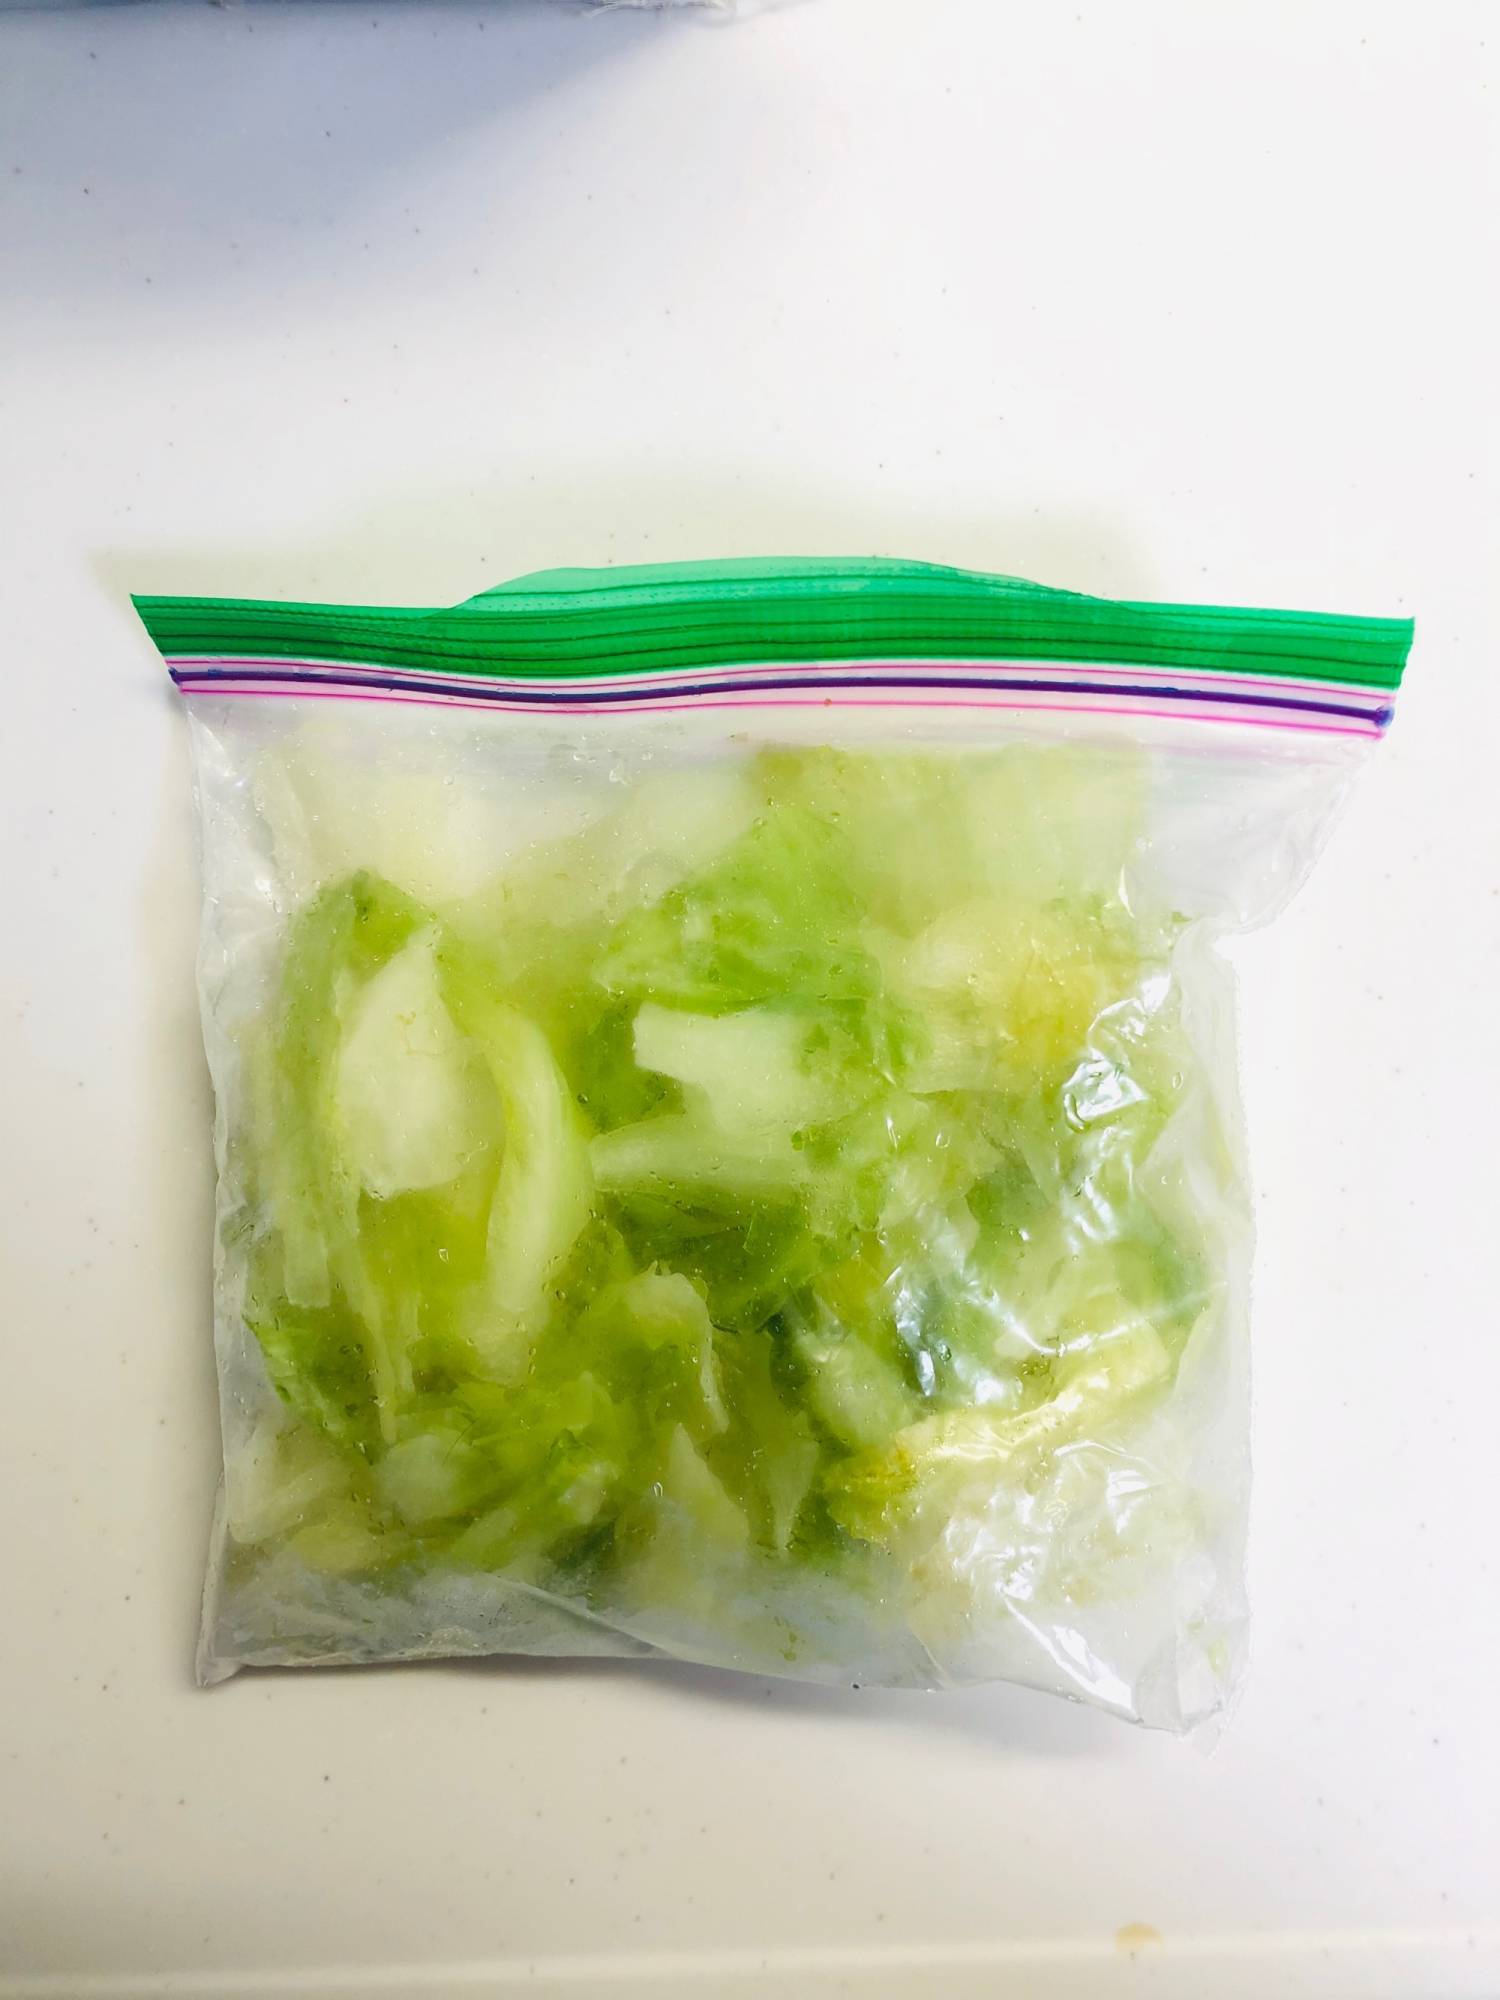 【余った野菜冷凍保存】傷む前にレタスを冷凍保存